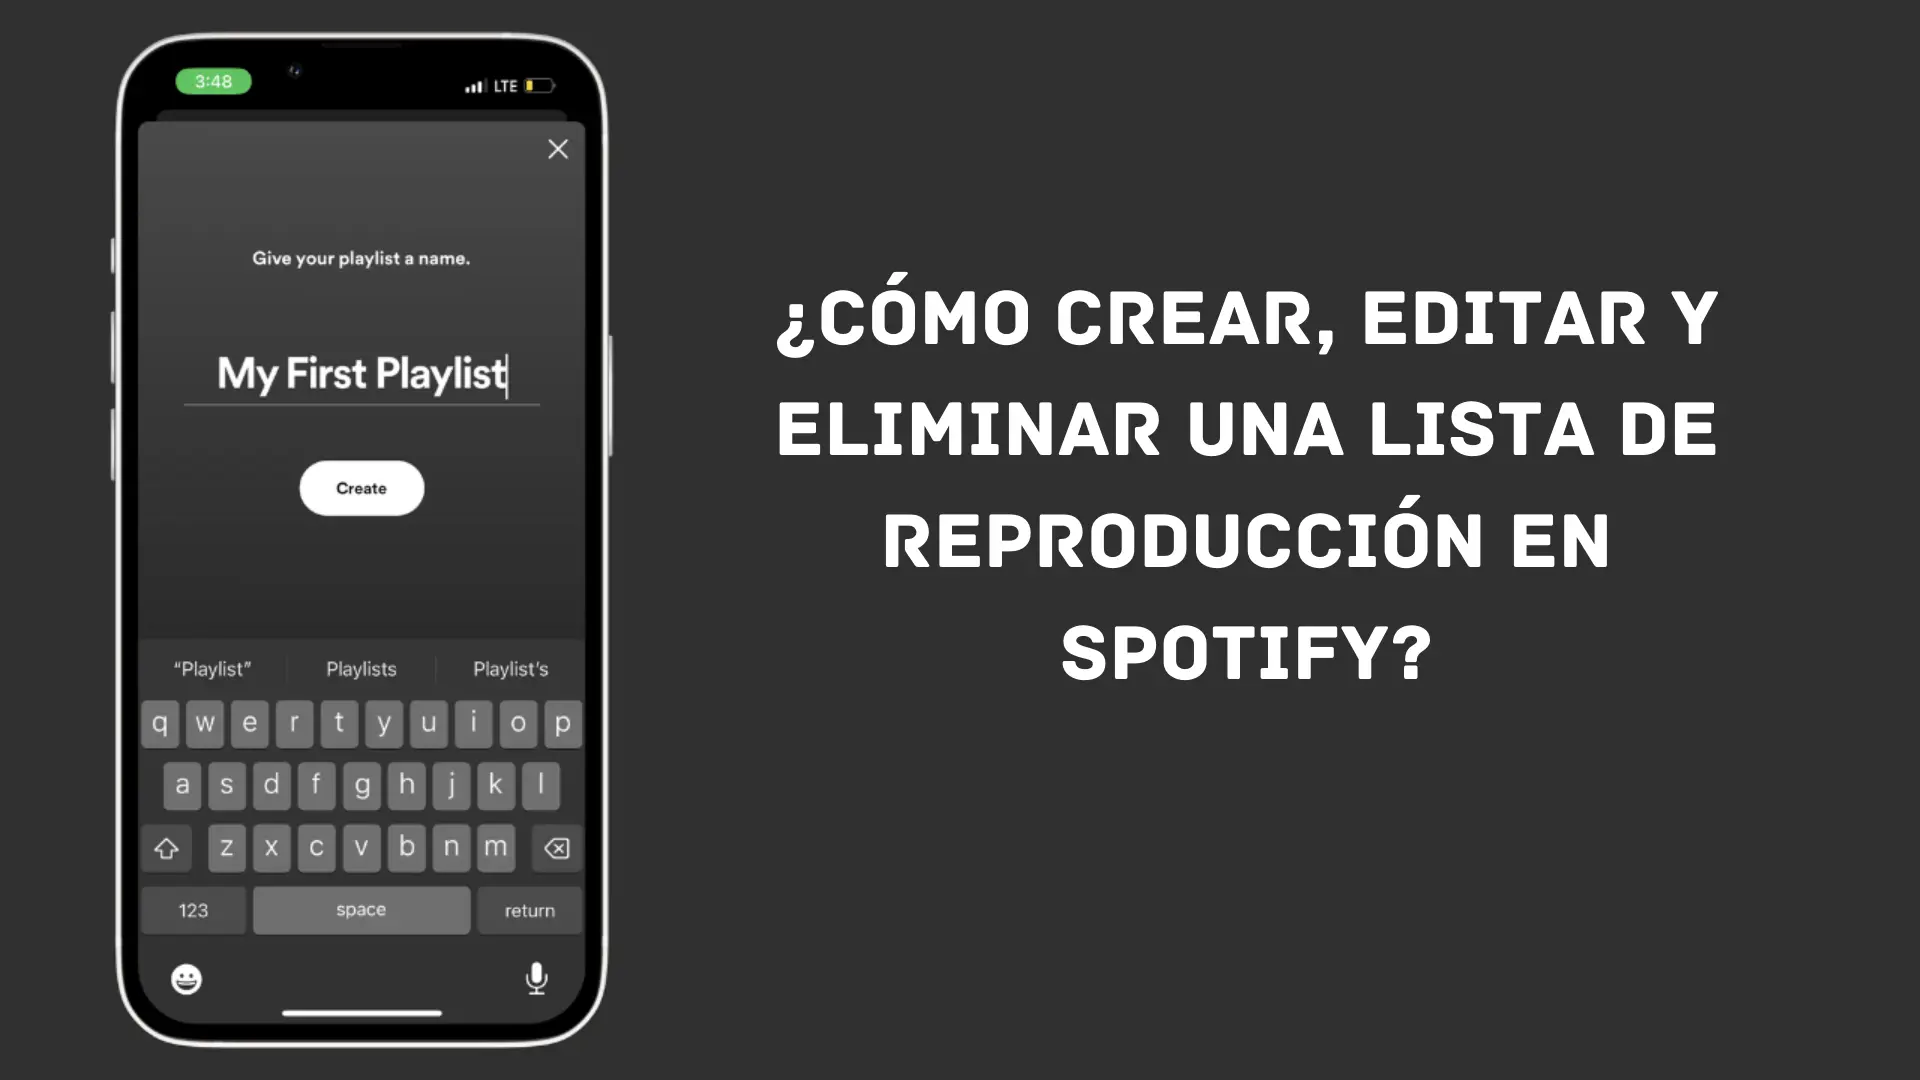 Cómo crear, editar y eliminar una lista de reproducción en Spotify [Guía completa]